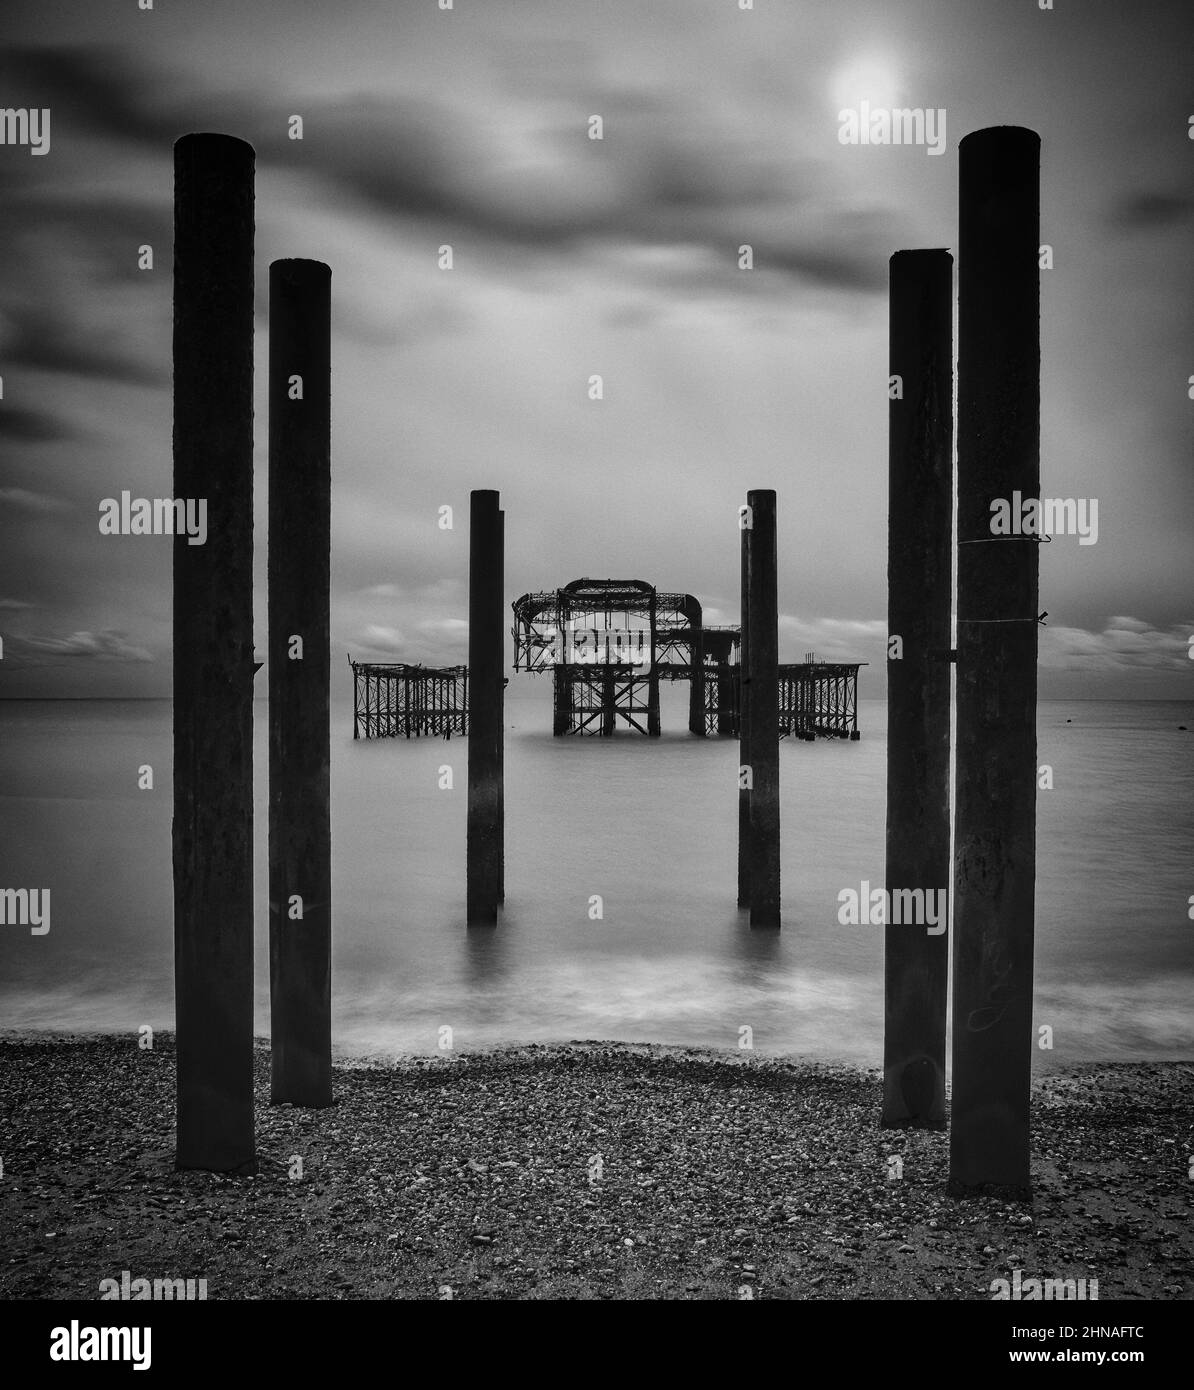 Un rendu monochrome de l'emblématique West Pier à Brighton pour accentuer la forme architecturale frappante de la ruine et de ses poteaux. Banque D'Images